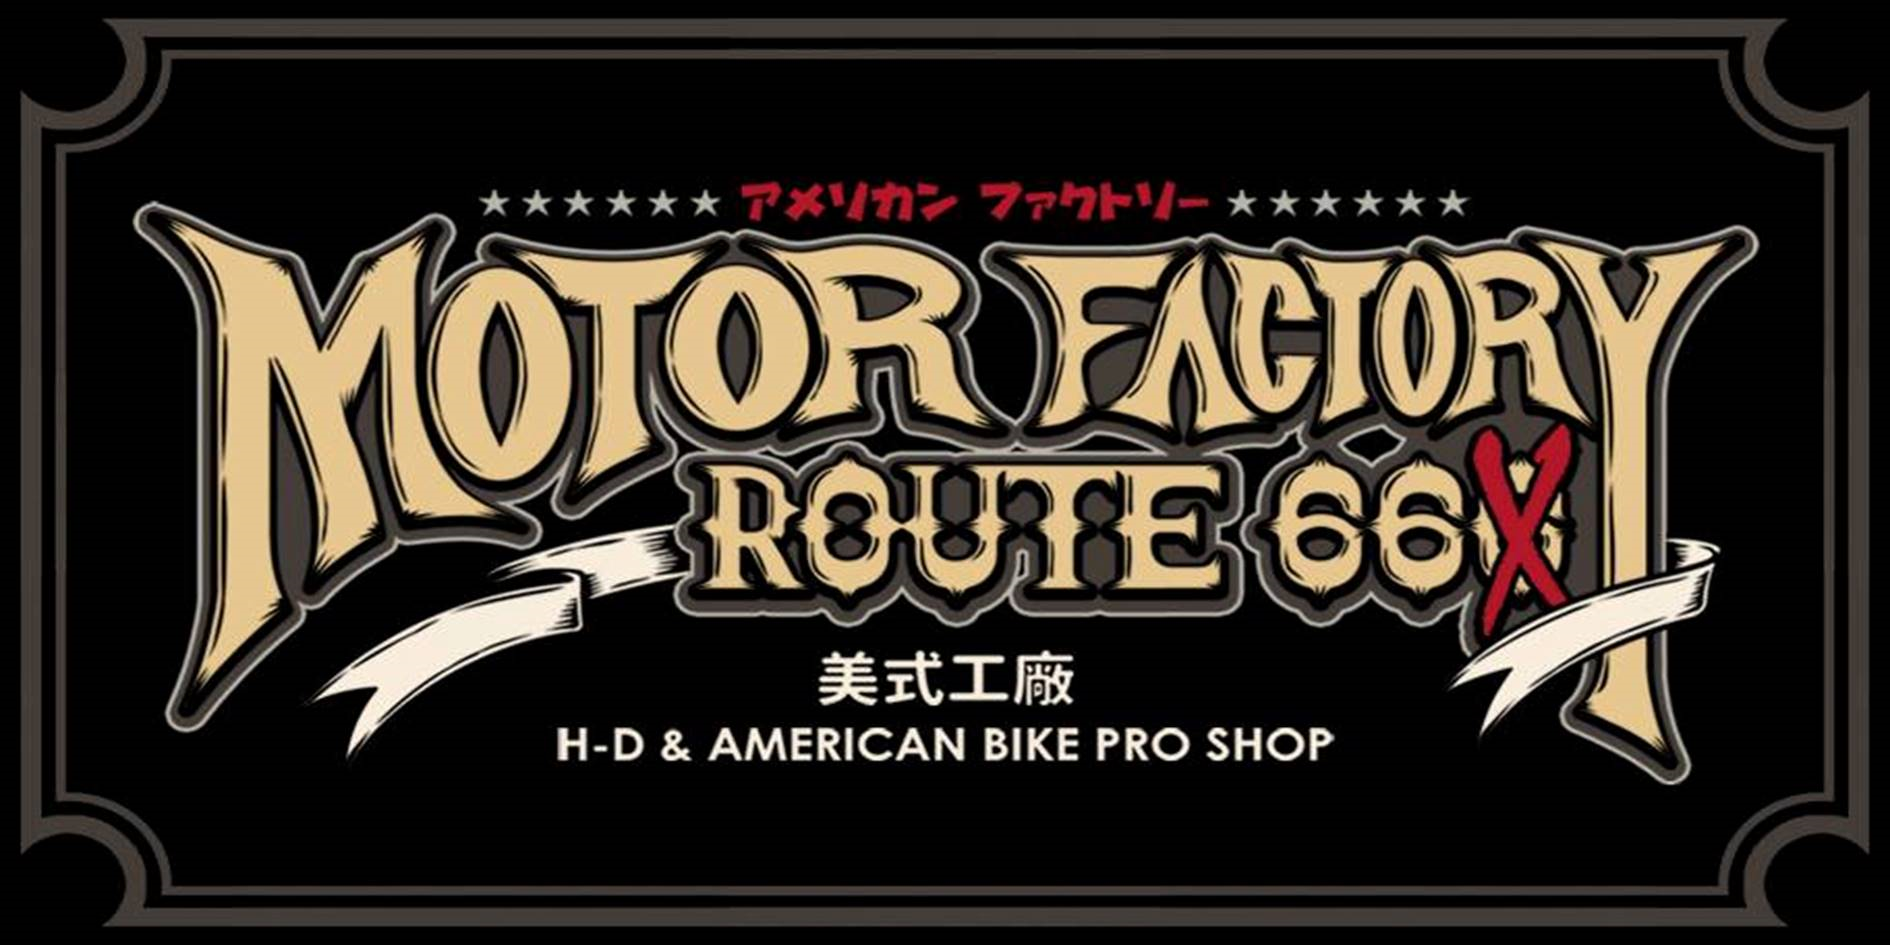 Motor factory route66 | Route66shop